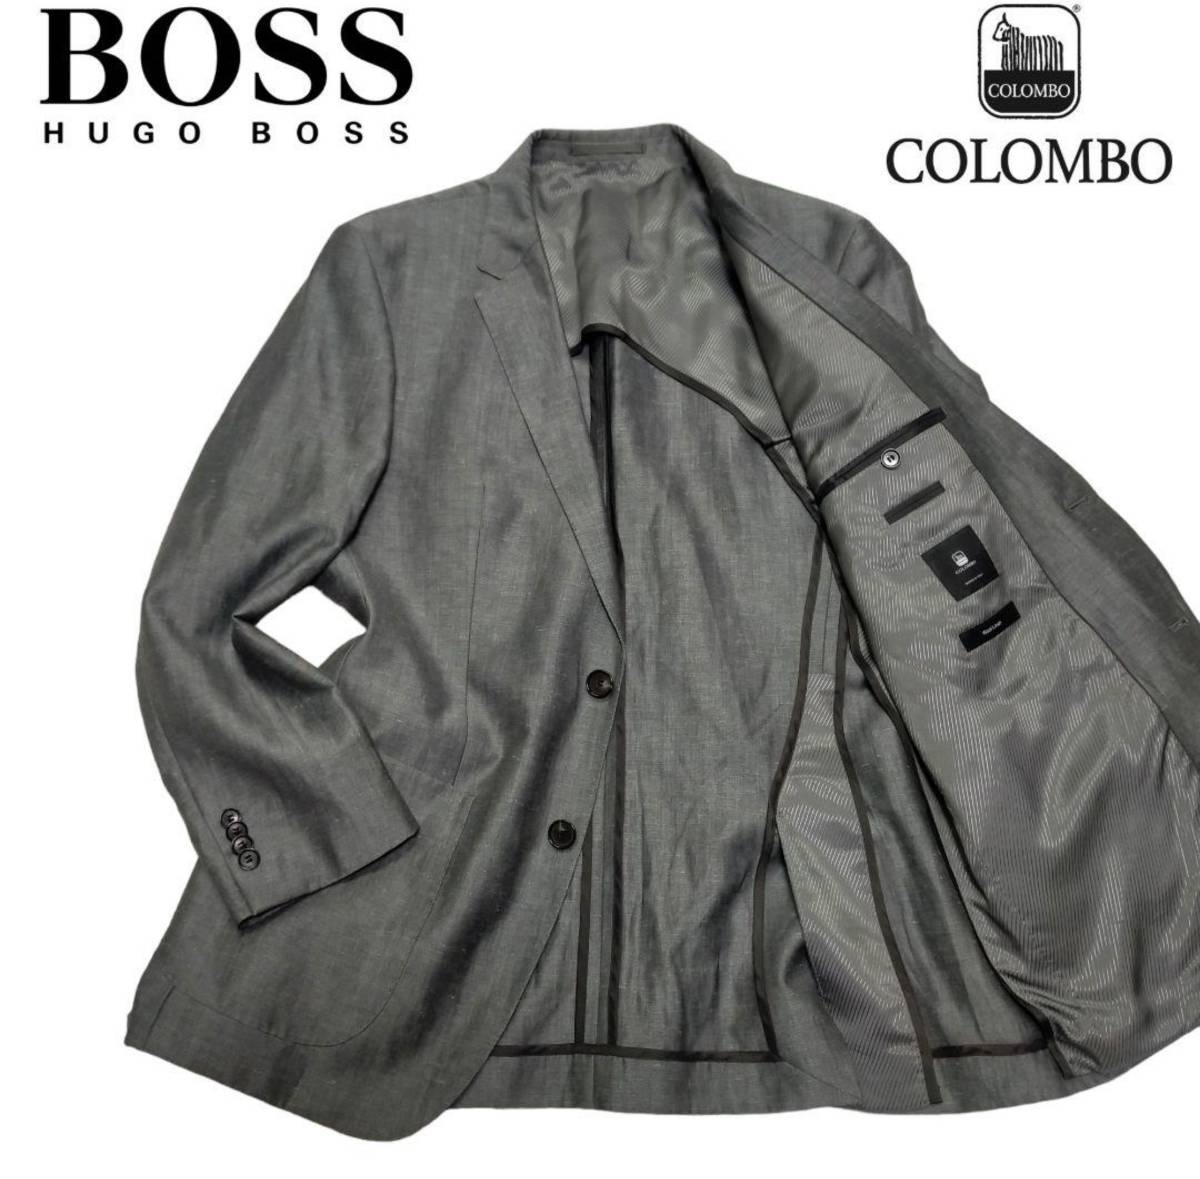 《最高級》HUGO BOSS ヒューゴボス イタリア高級生地ブランド Colombo コロンボ社製 ウール リネン テーラードジャケット XL_画像1